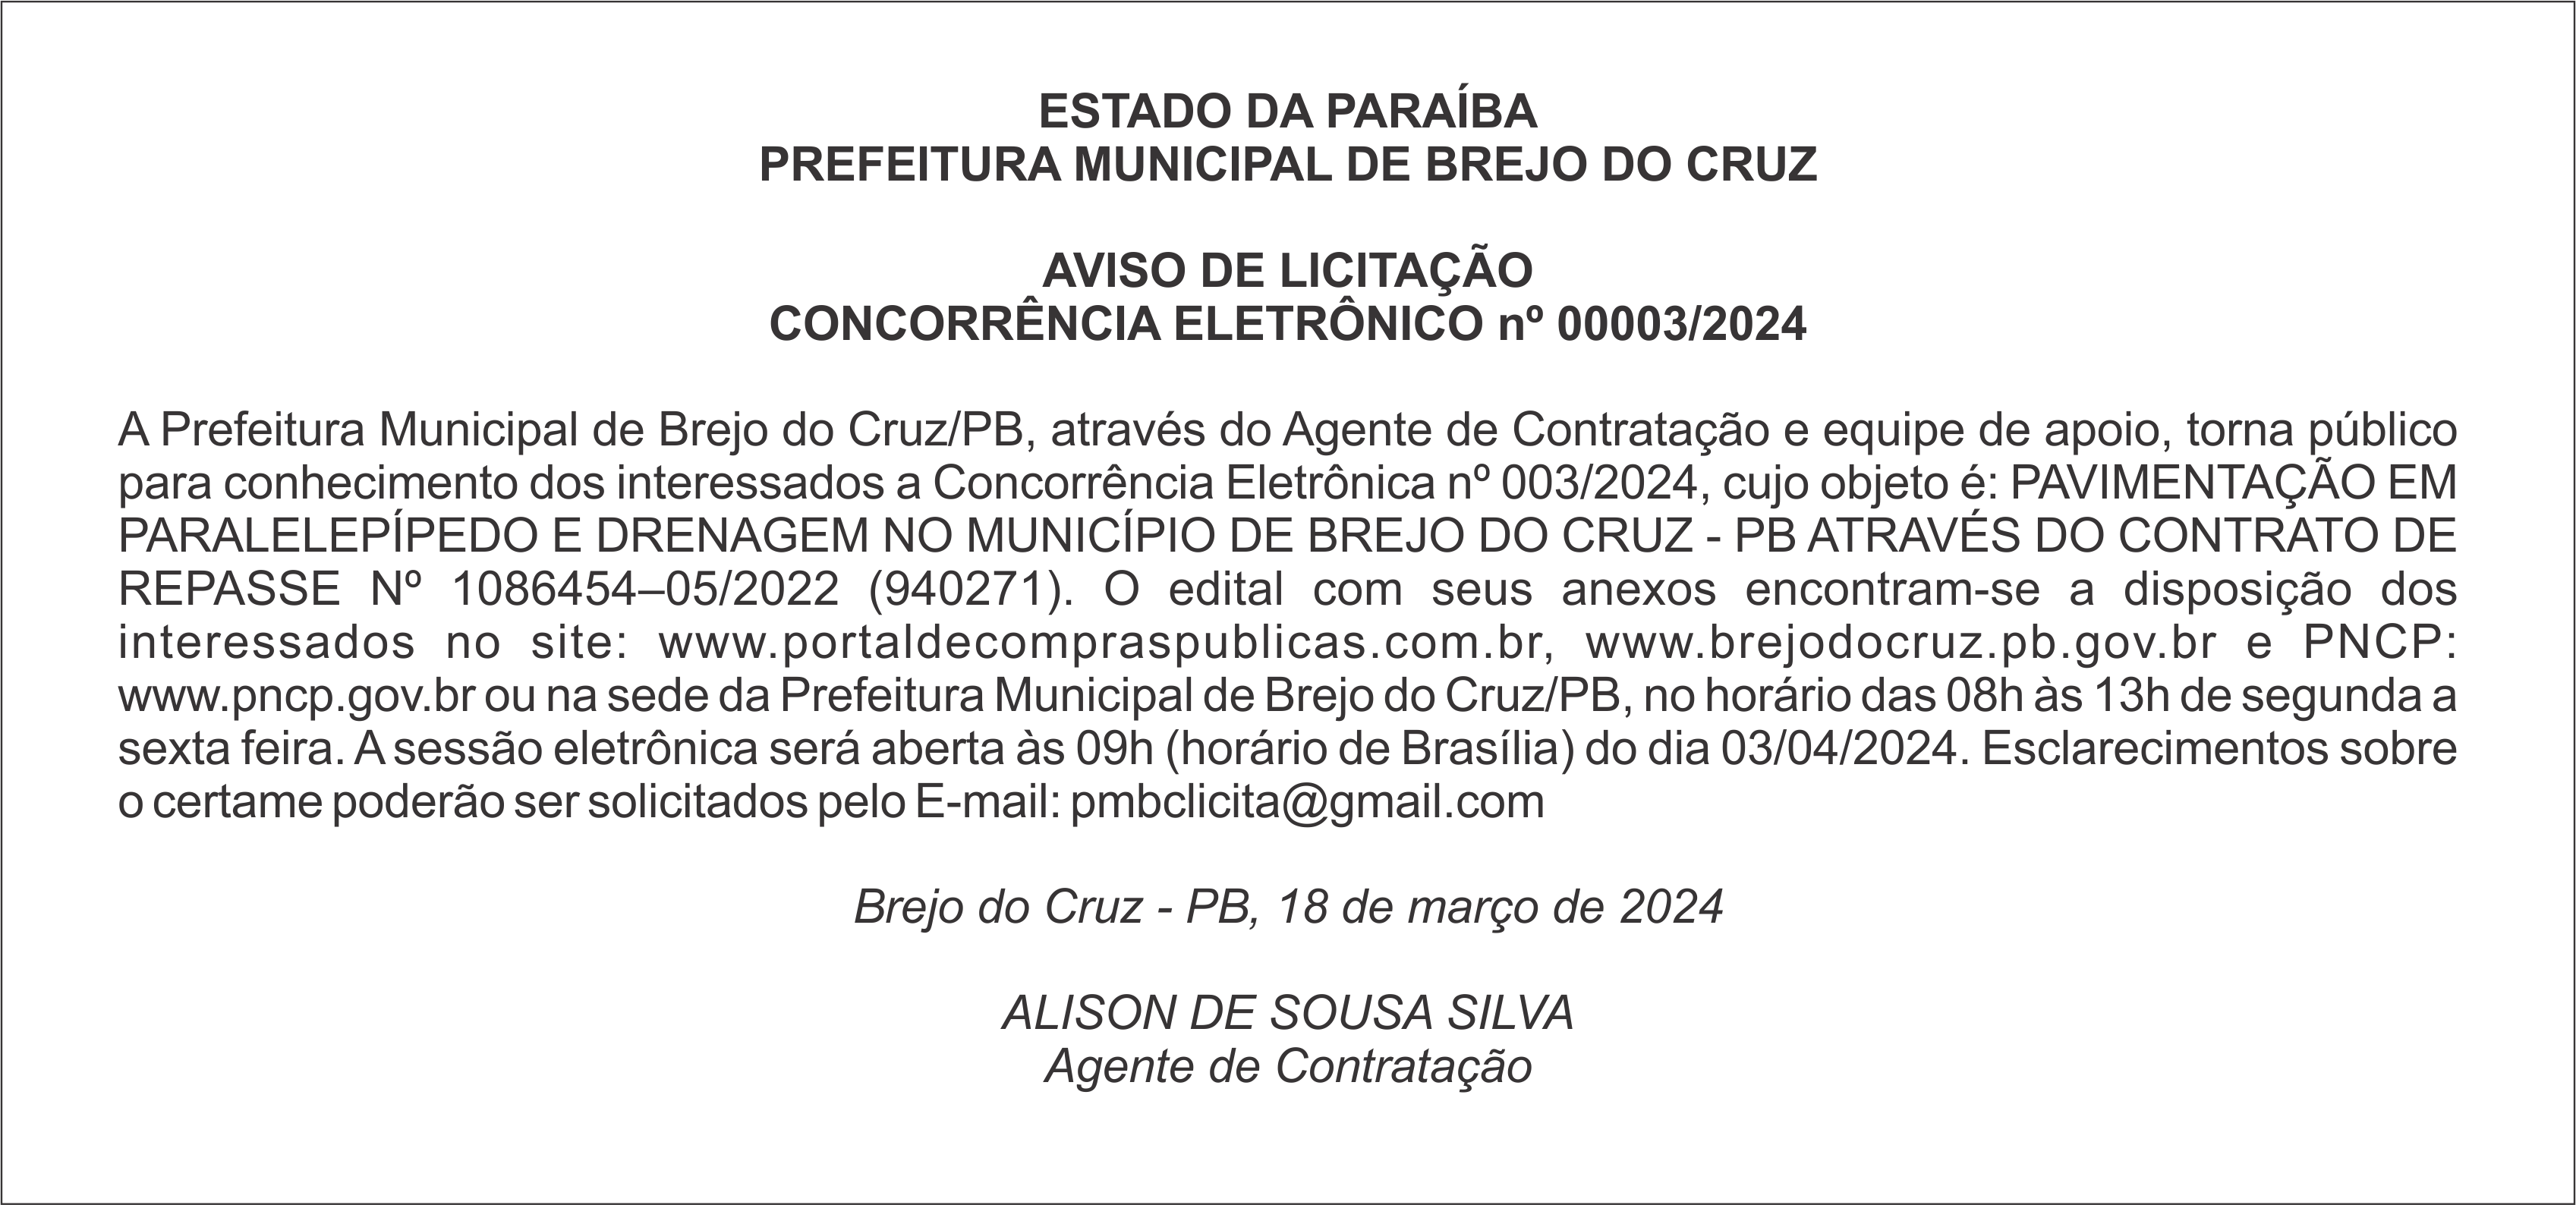 PREFEITURA MUNICIPAL DE BREJO DO CRUZ – AVISO DE LICITAÇÃO – CONCORRÊNCIA ELETRÔNICO nº 00003/2024